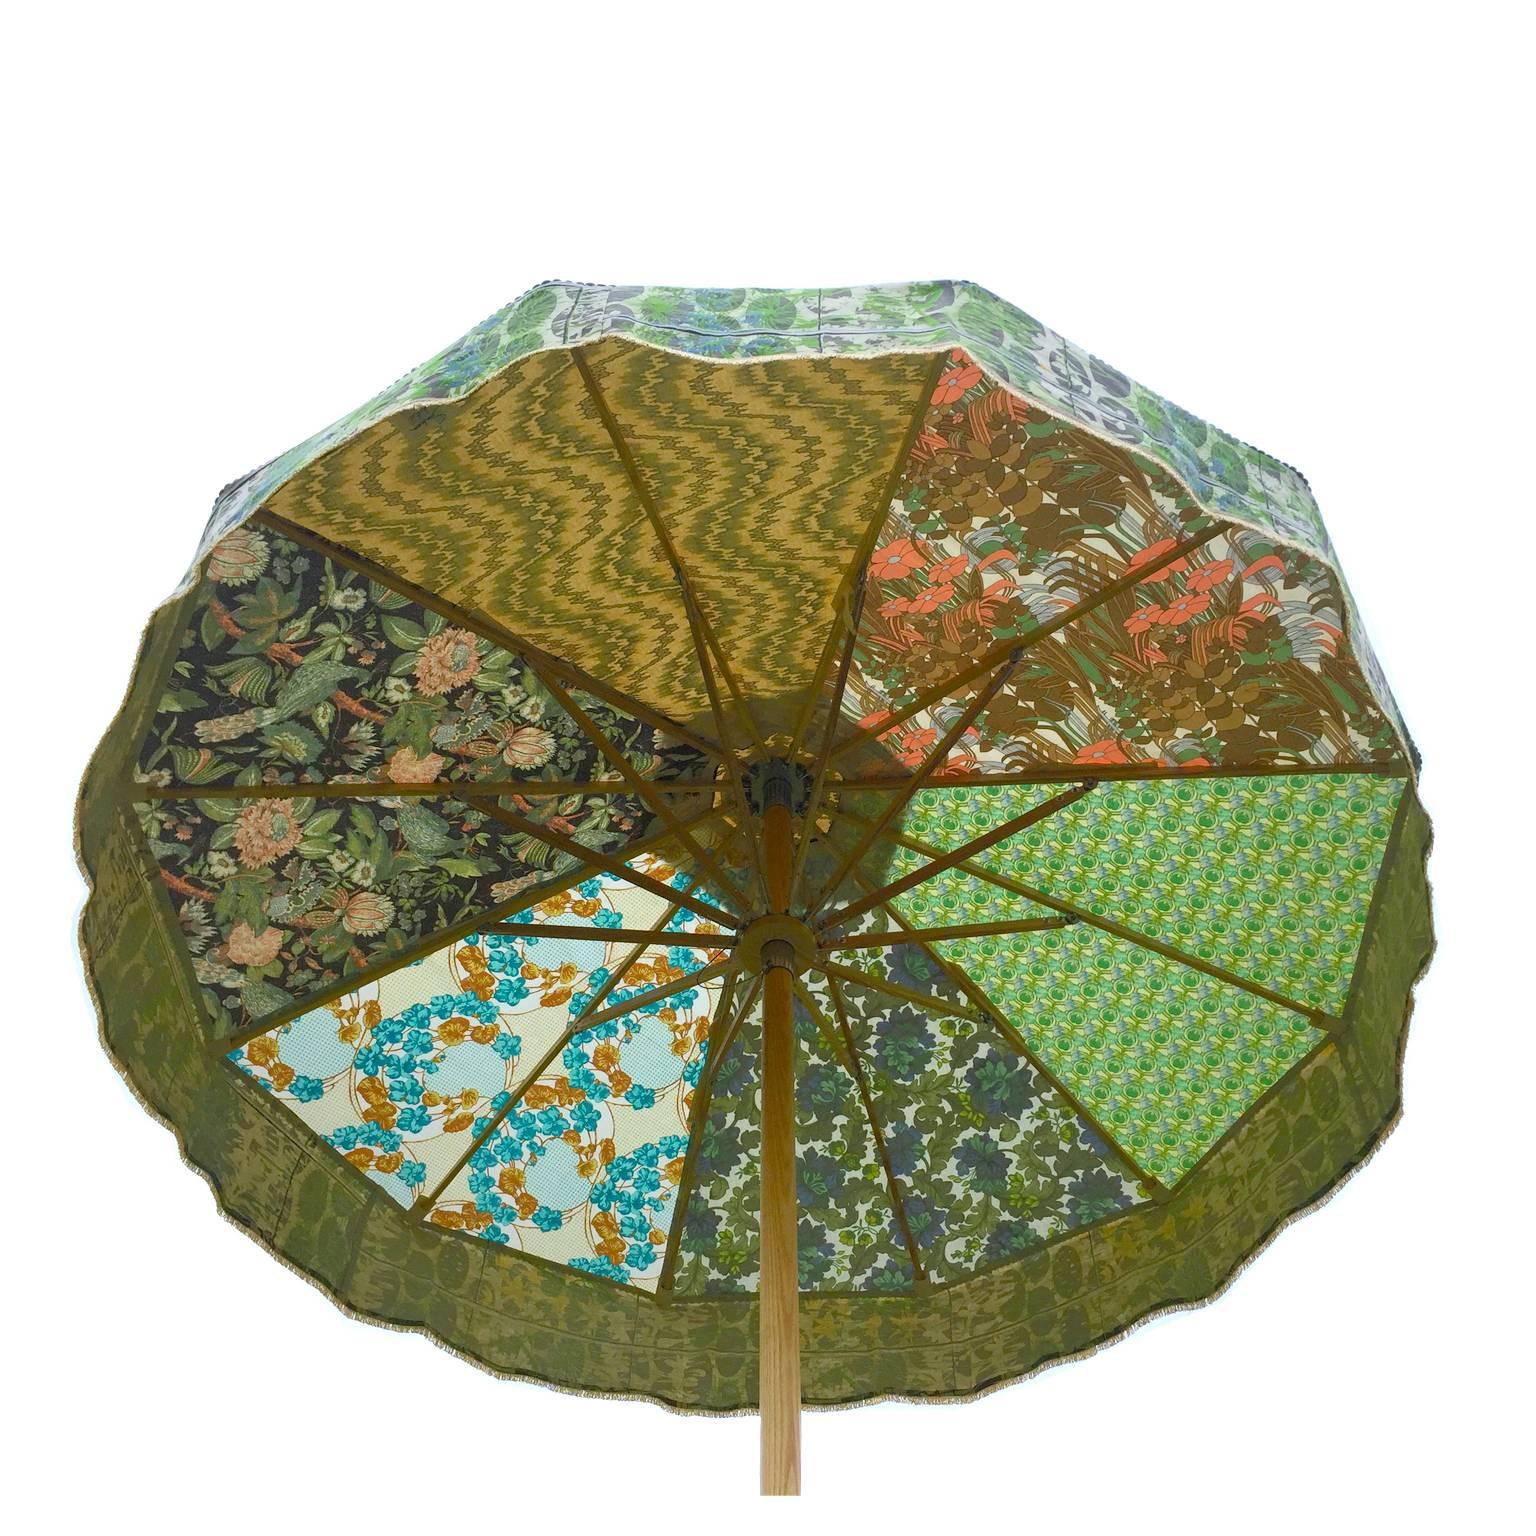 Welded Designer Sun Umbrella Patio Parasol in Floral Geometric Vintage Fabrics Maximal